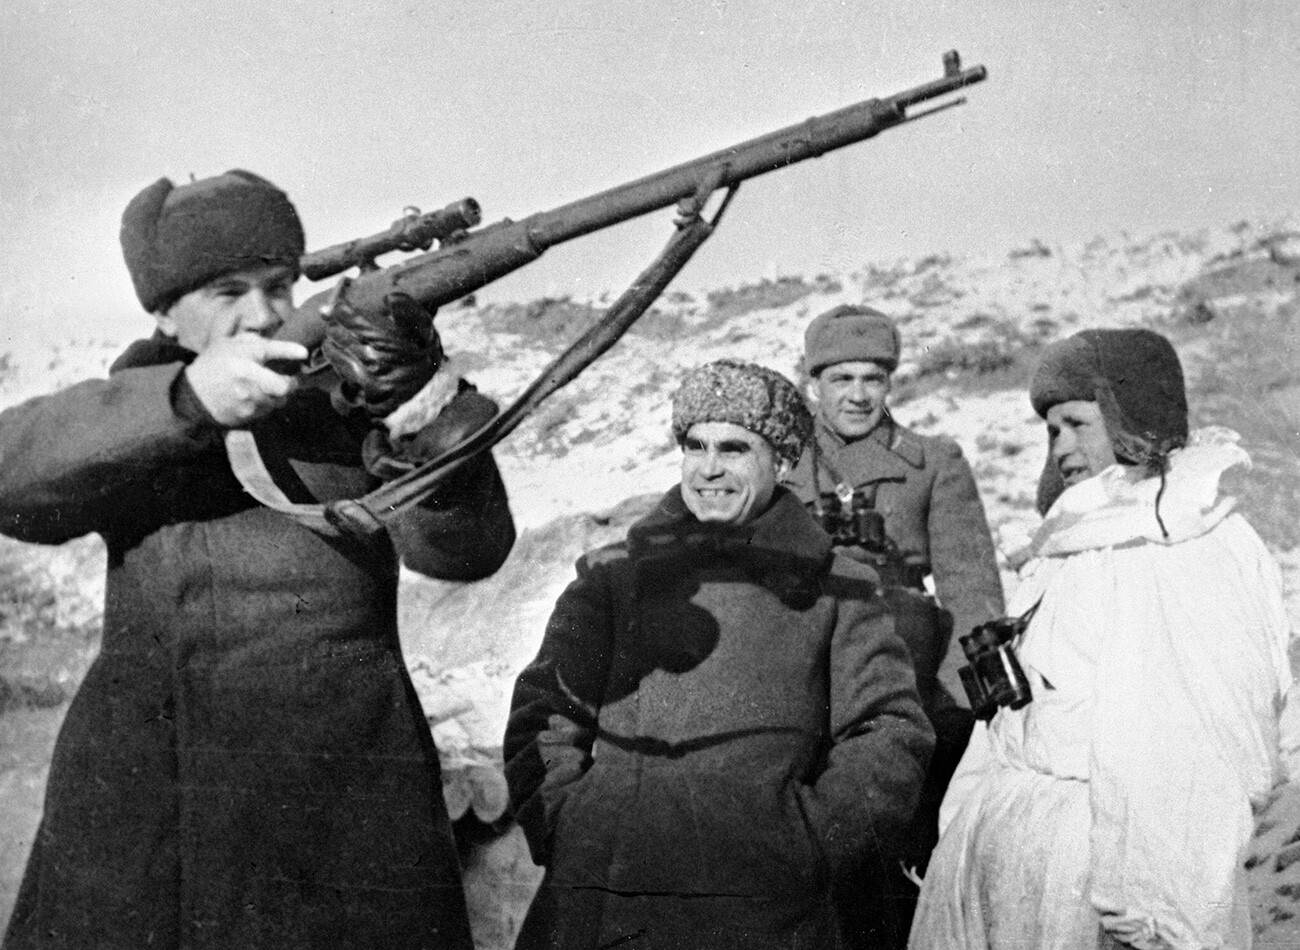 Član vojaškega sveta 62. armade (v sredini) Kuzma Akimovič Gurov in poveljnik 62. armade Vasilij Ivanovič Čujkov (levo s puško) si ogledujeta orožje ostrostrelca Vasilija Zajceva